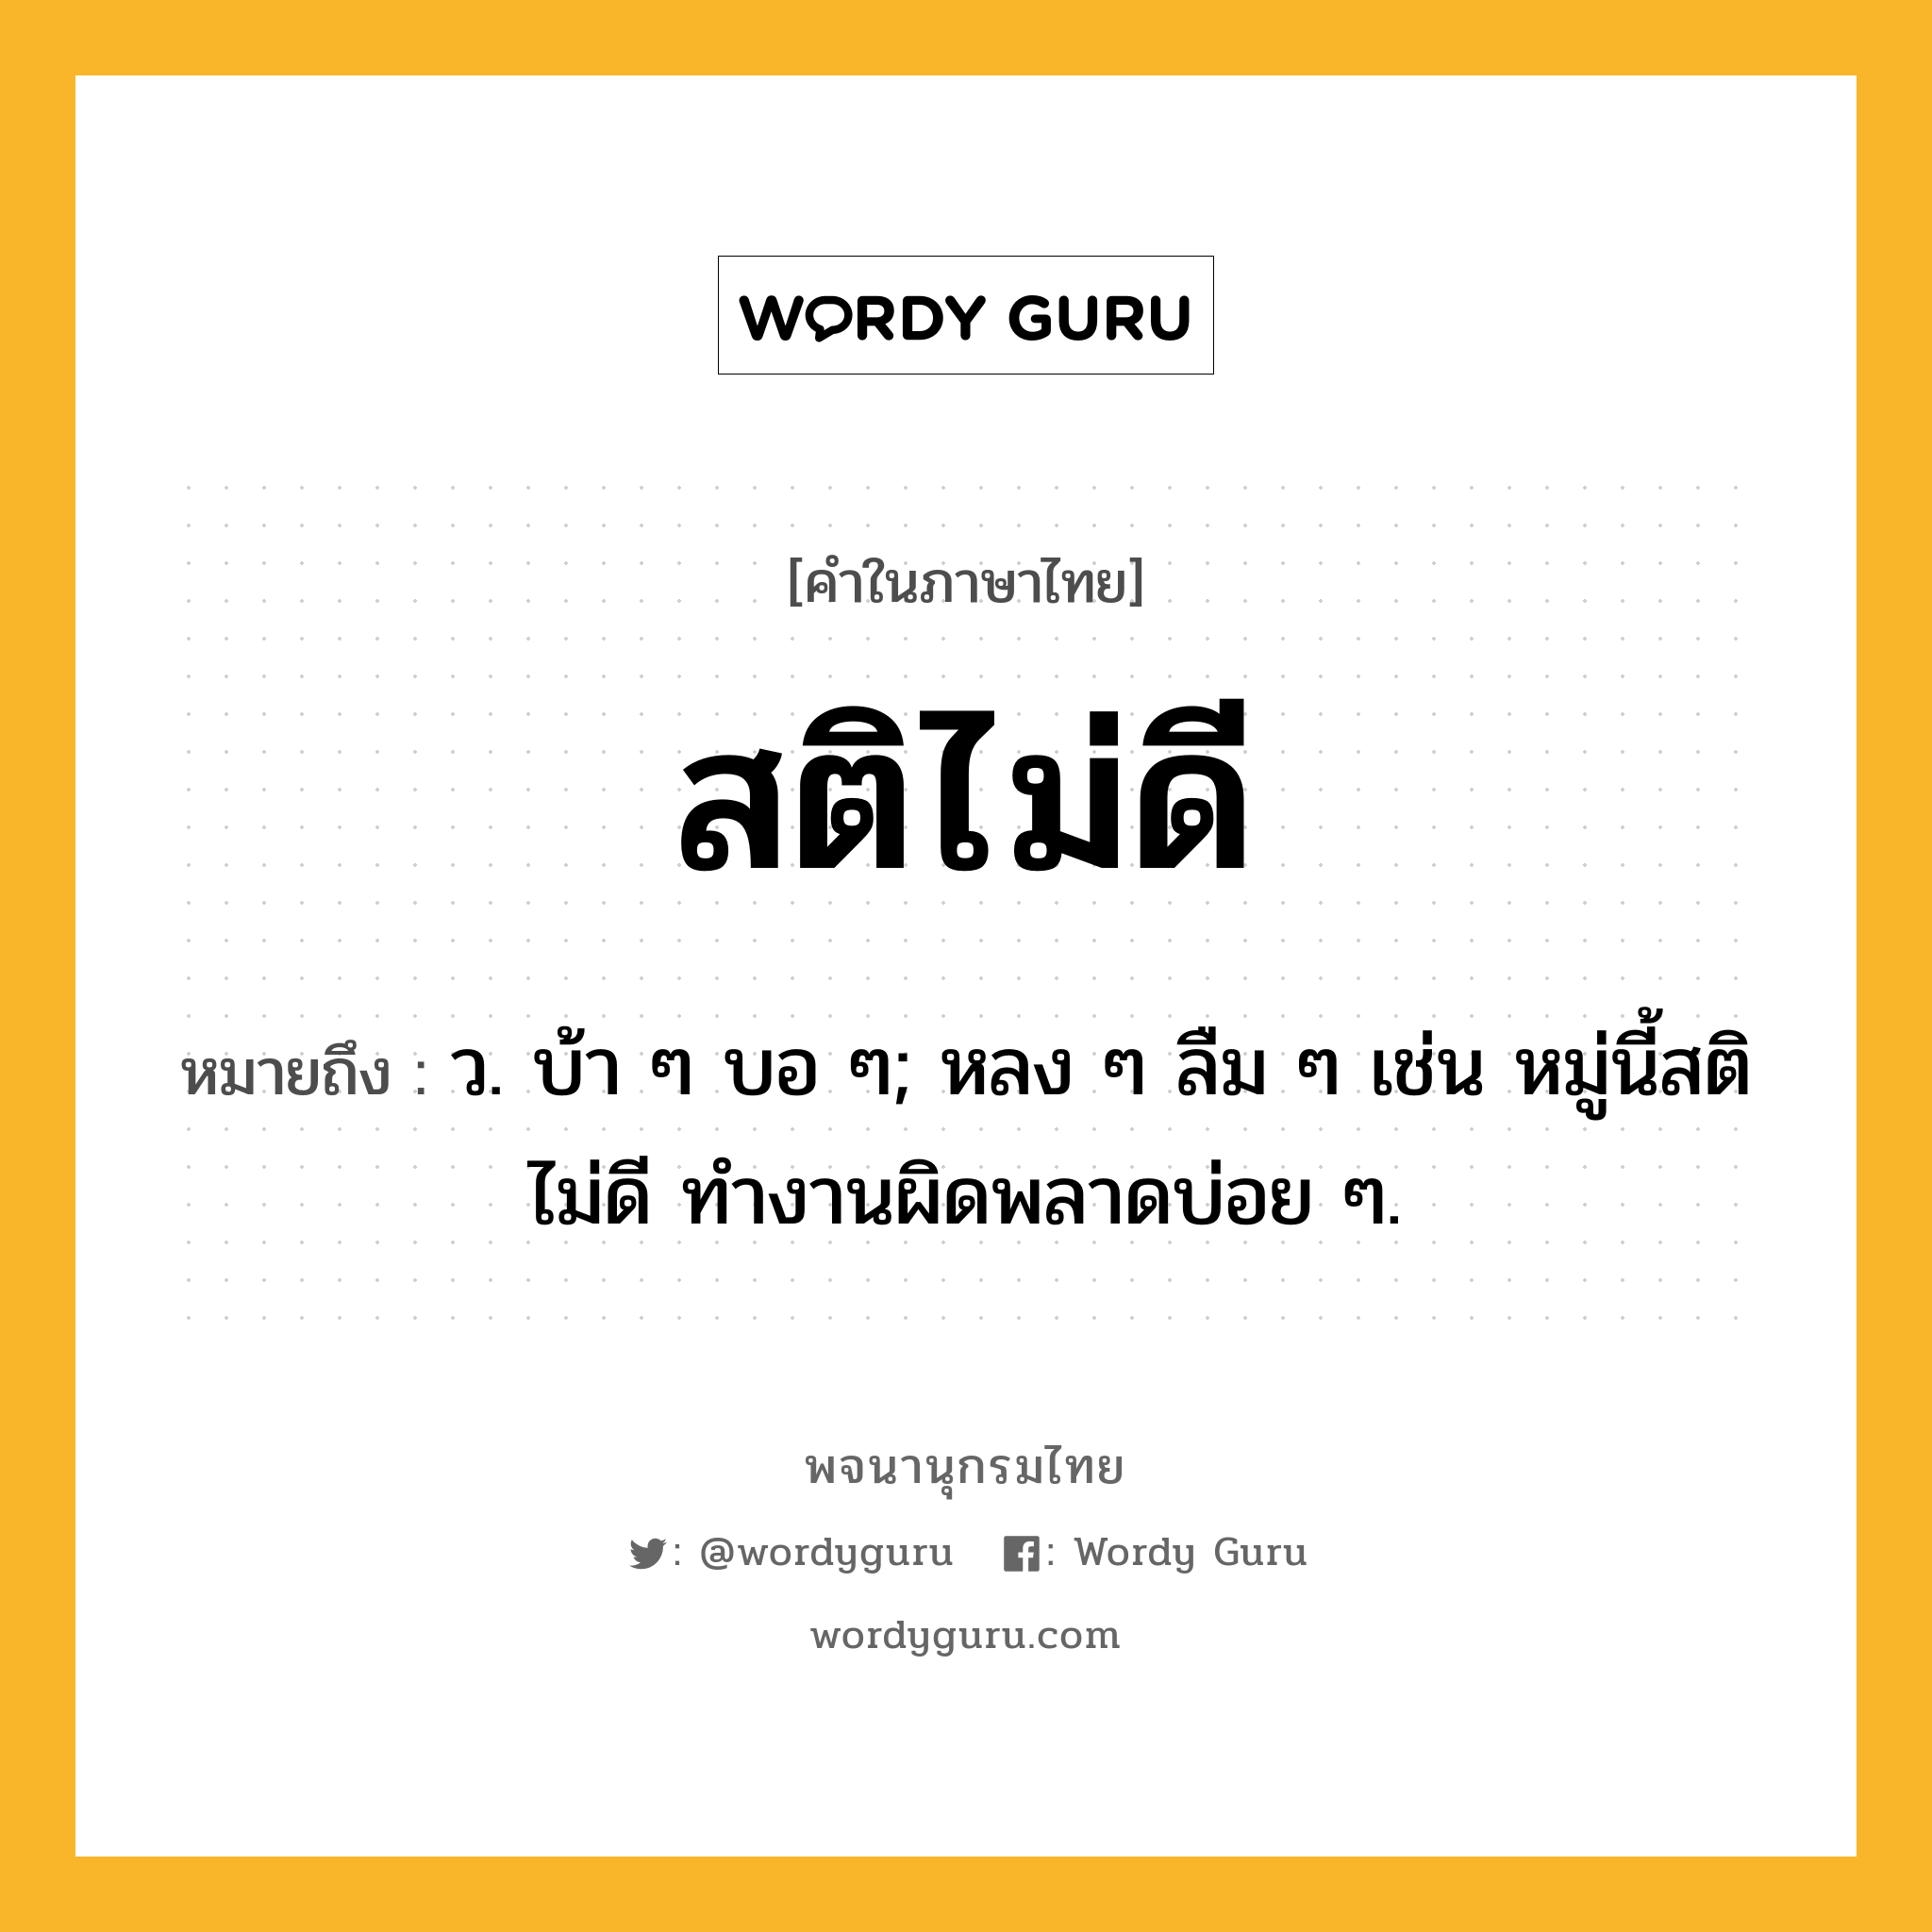 สติไม่ดี ความหมาย หมายถึงอะไร?, คำในภาษาไทย สติไม่ดี หมายถึง ว. บ้า ๆ บอ ๆ; หลง ๆ ลืม ๆ เช่น หมู่นี้สติไม่ดี ทำงานผิดพลาดบ่อย ๆ.